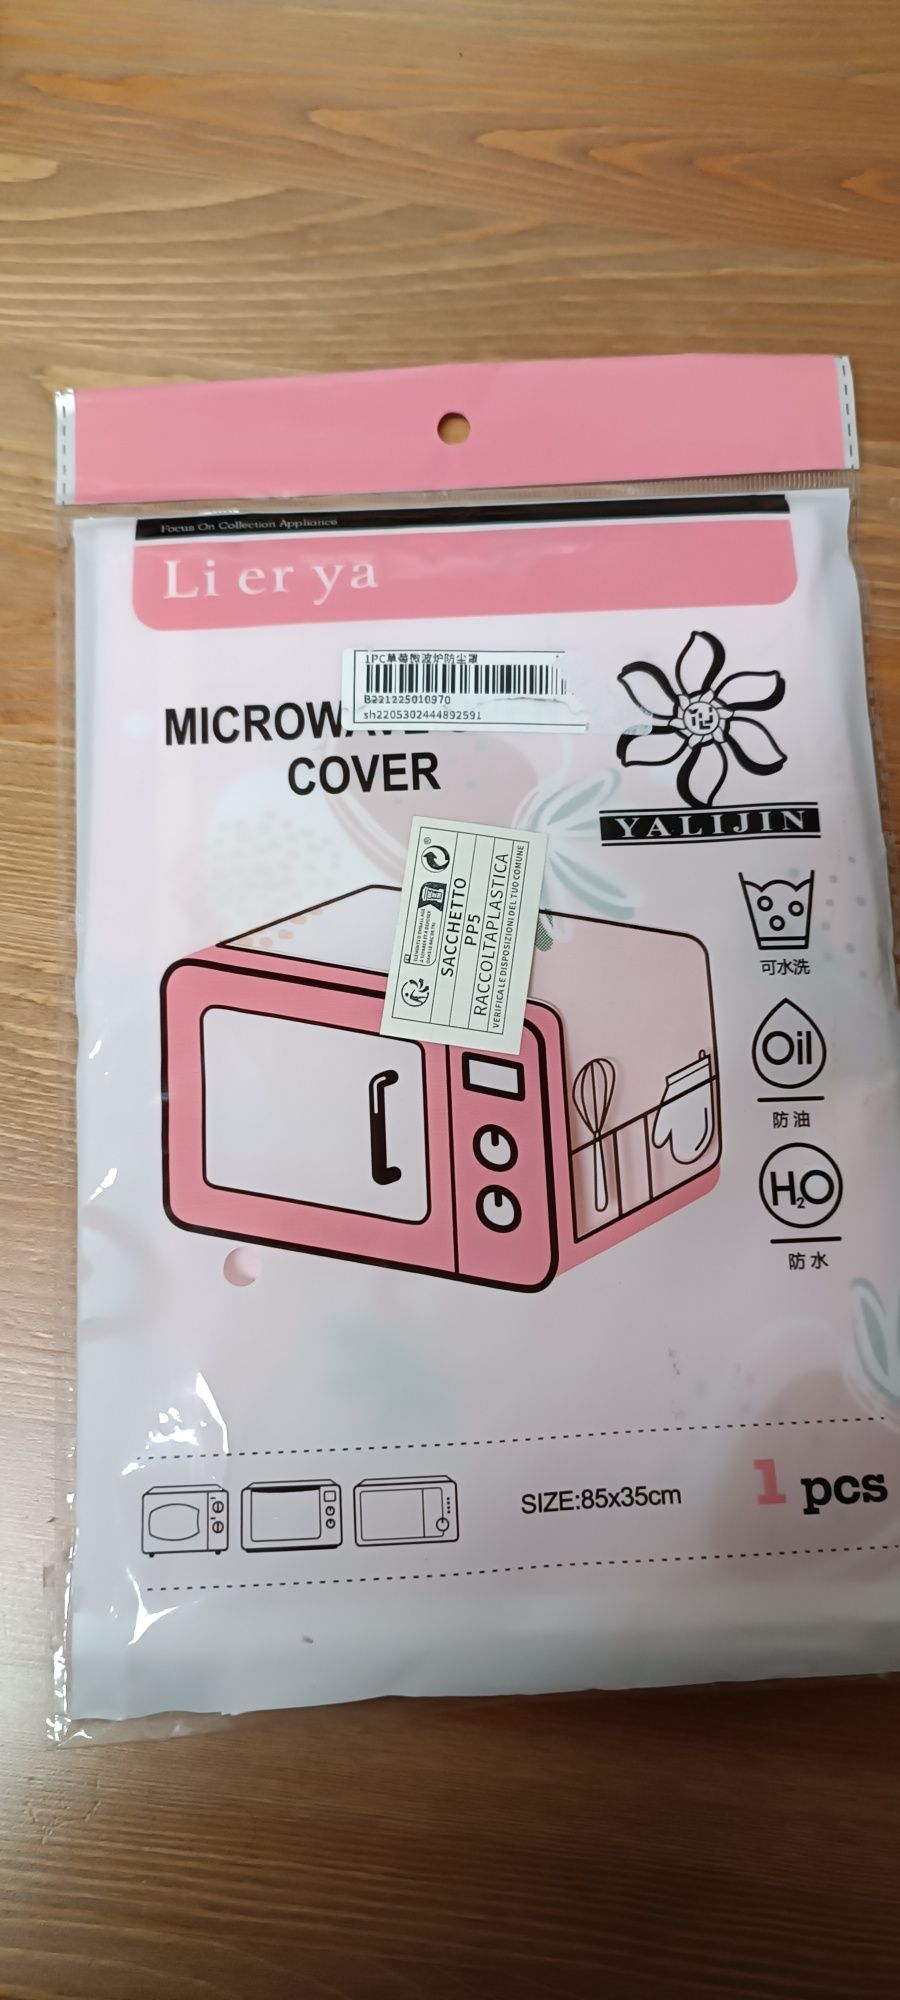 Proteção de microondas com bolsas